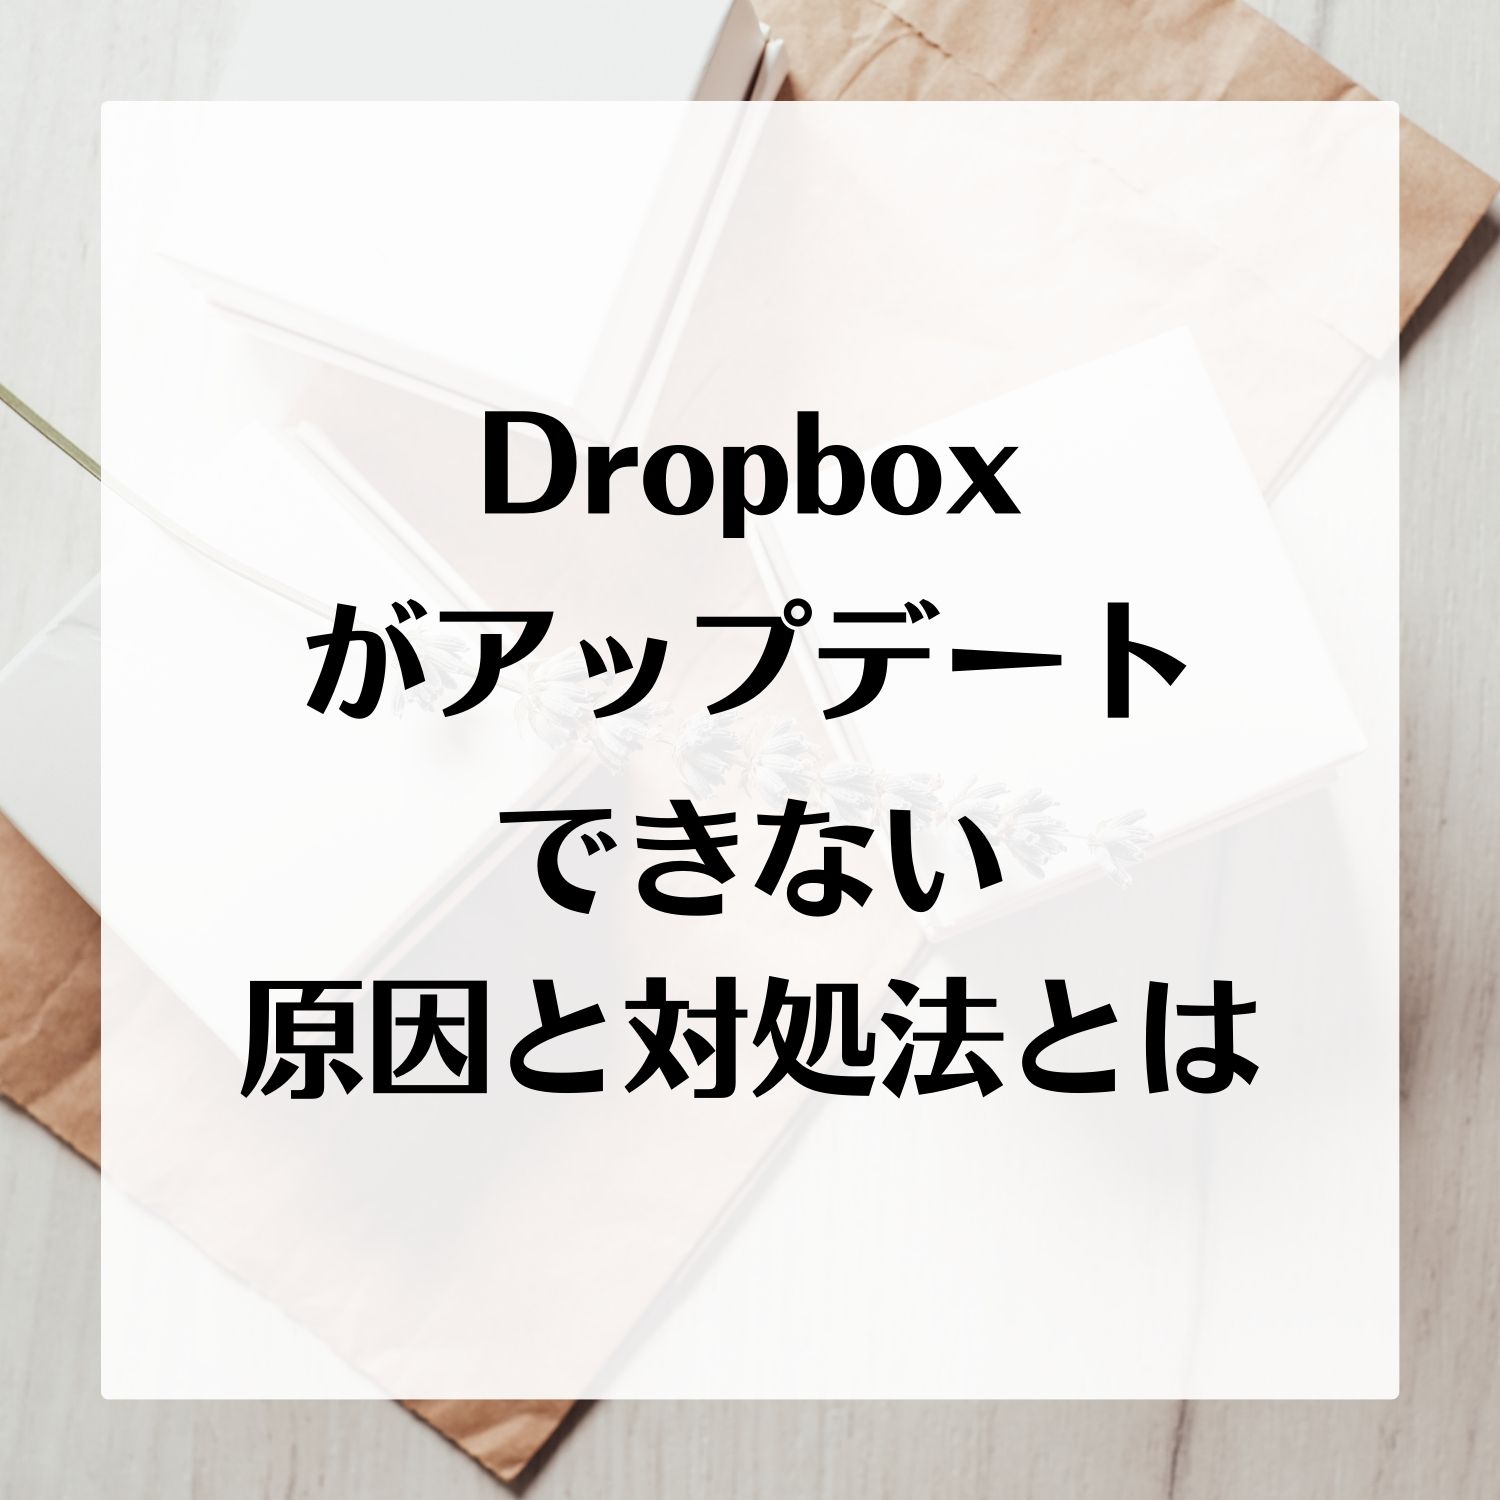 Dropboxがアップデートできない原因と対処法とは #Dropbox